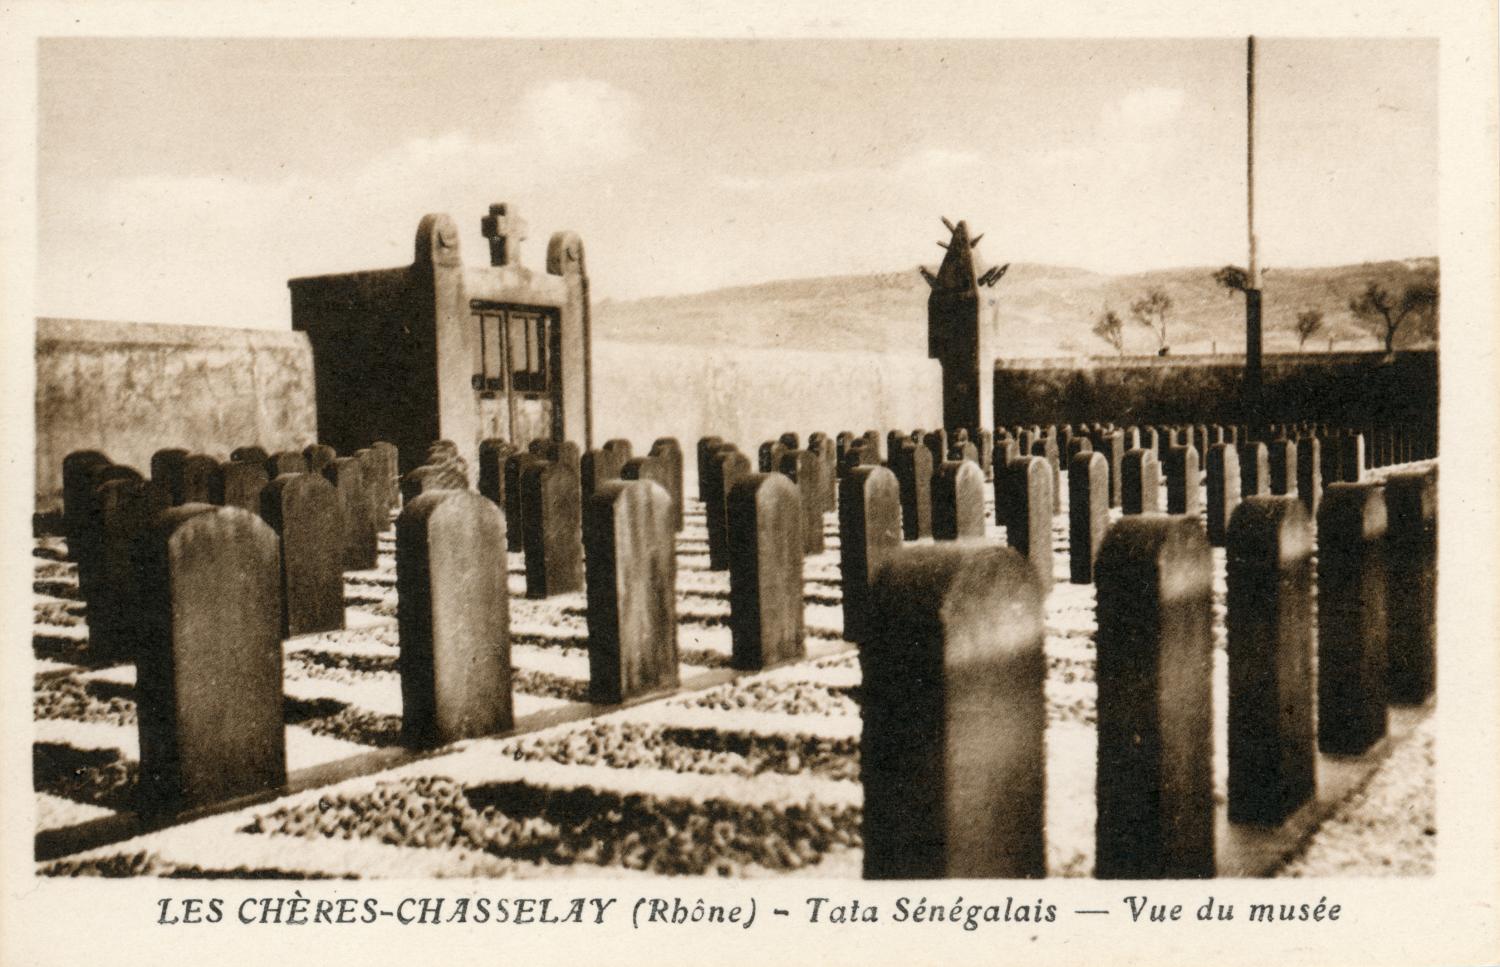 Les Chères-Chasselay (Rhône). - Tata Sénégalais - Vue du Musée